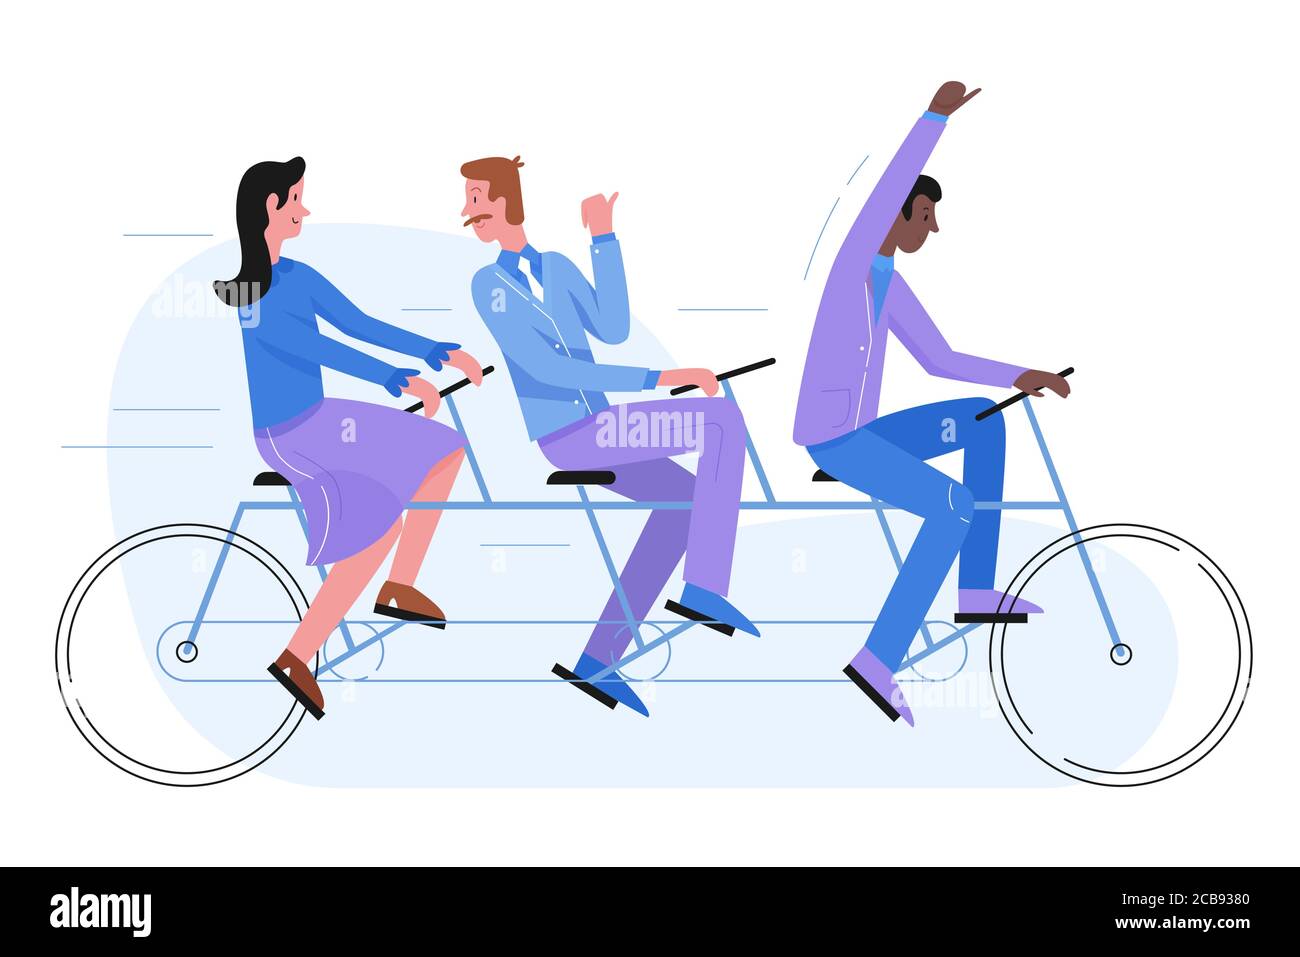 Grupo de gente de negocios de tres personas montando en bicicleta tándem.  Exitoso concepto de cooperación colectiva para hombres de negocios.  Ilustración de vector plano aislada. Trabajo en equipo, liderazgo y  colaboración,